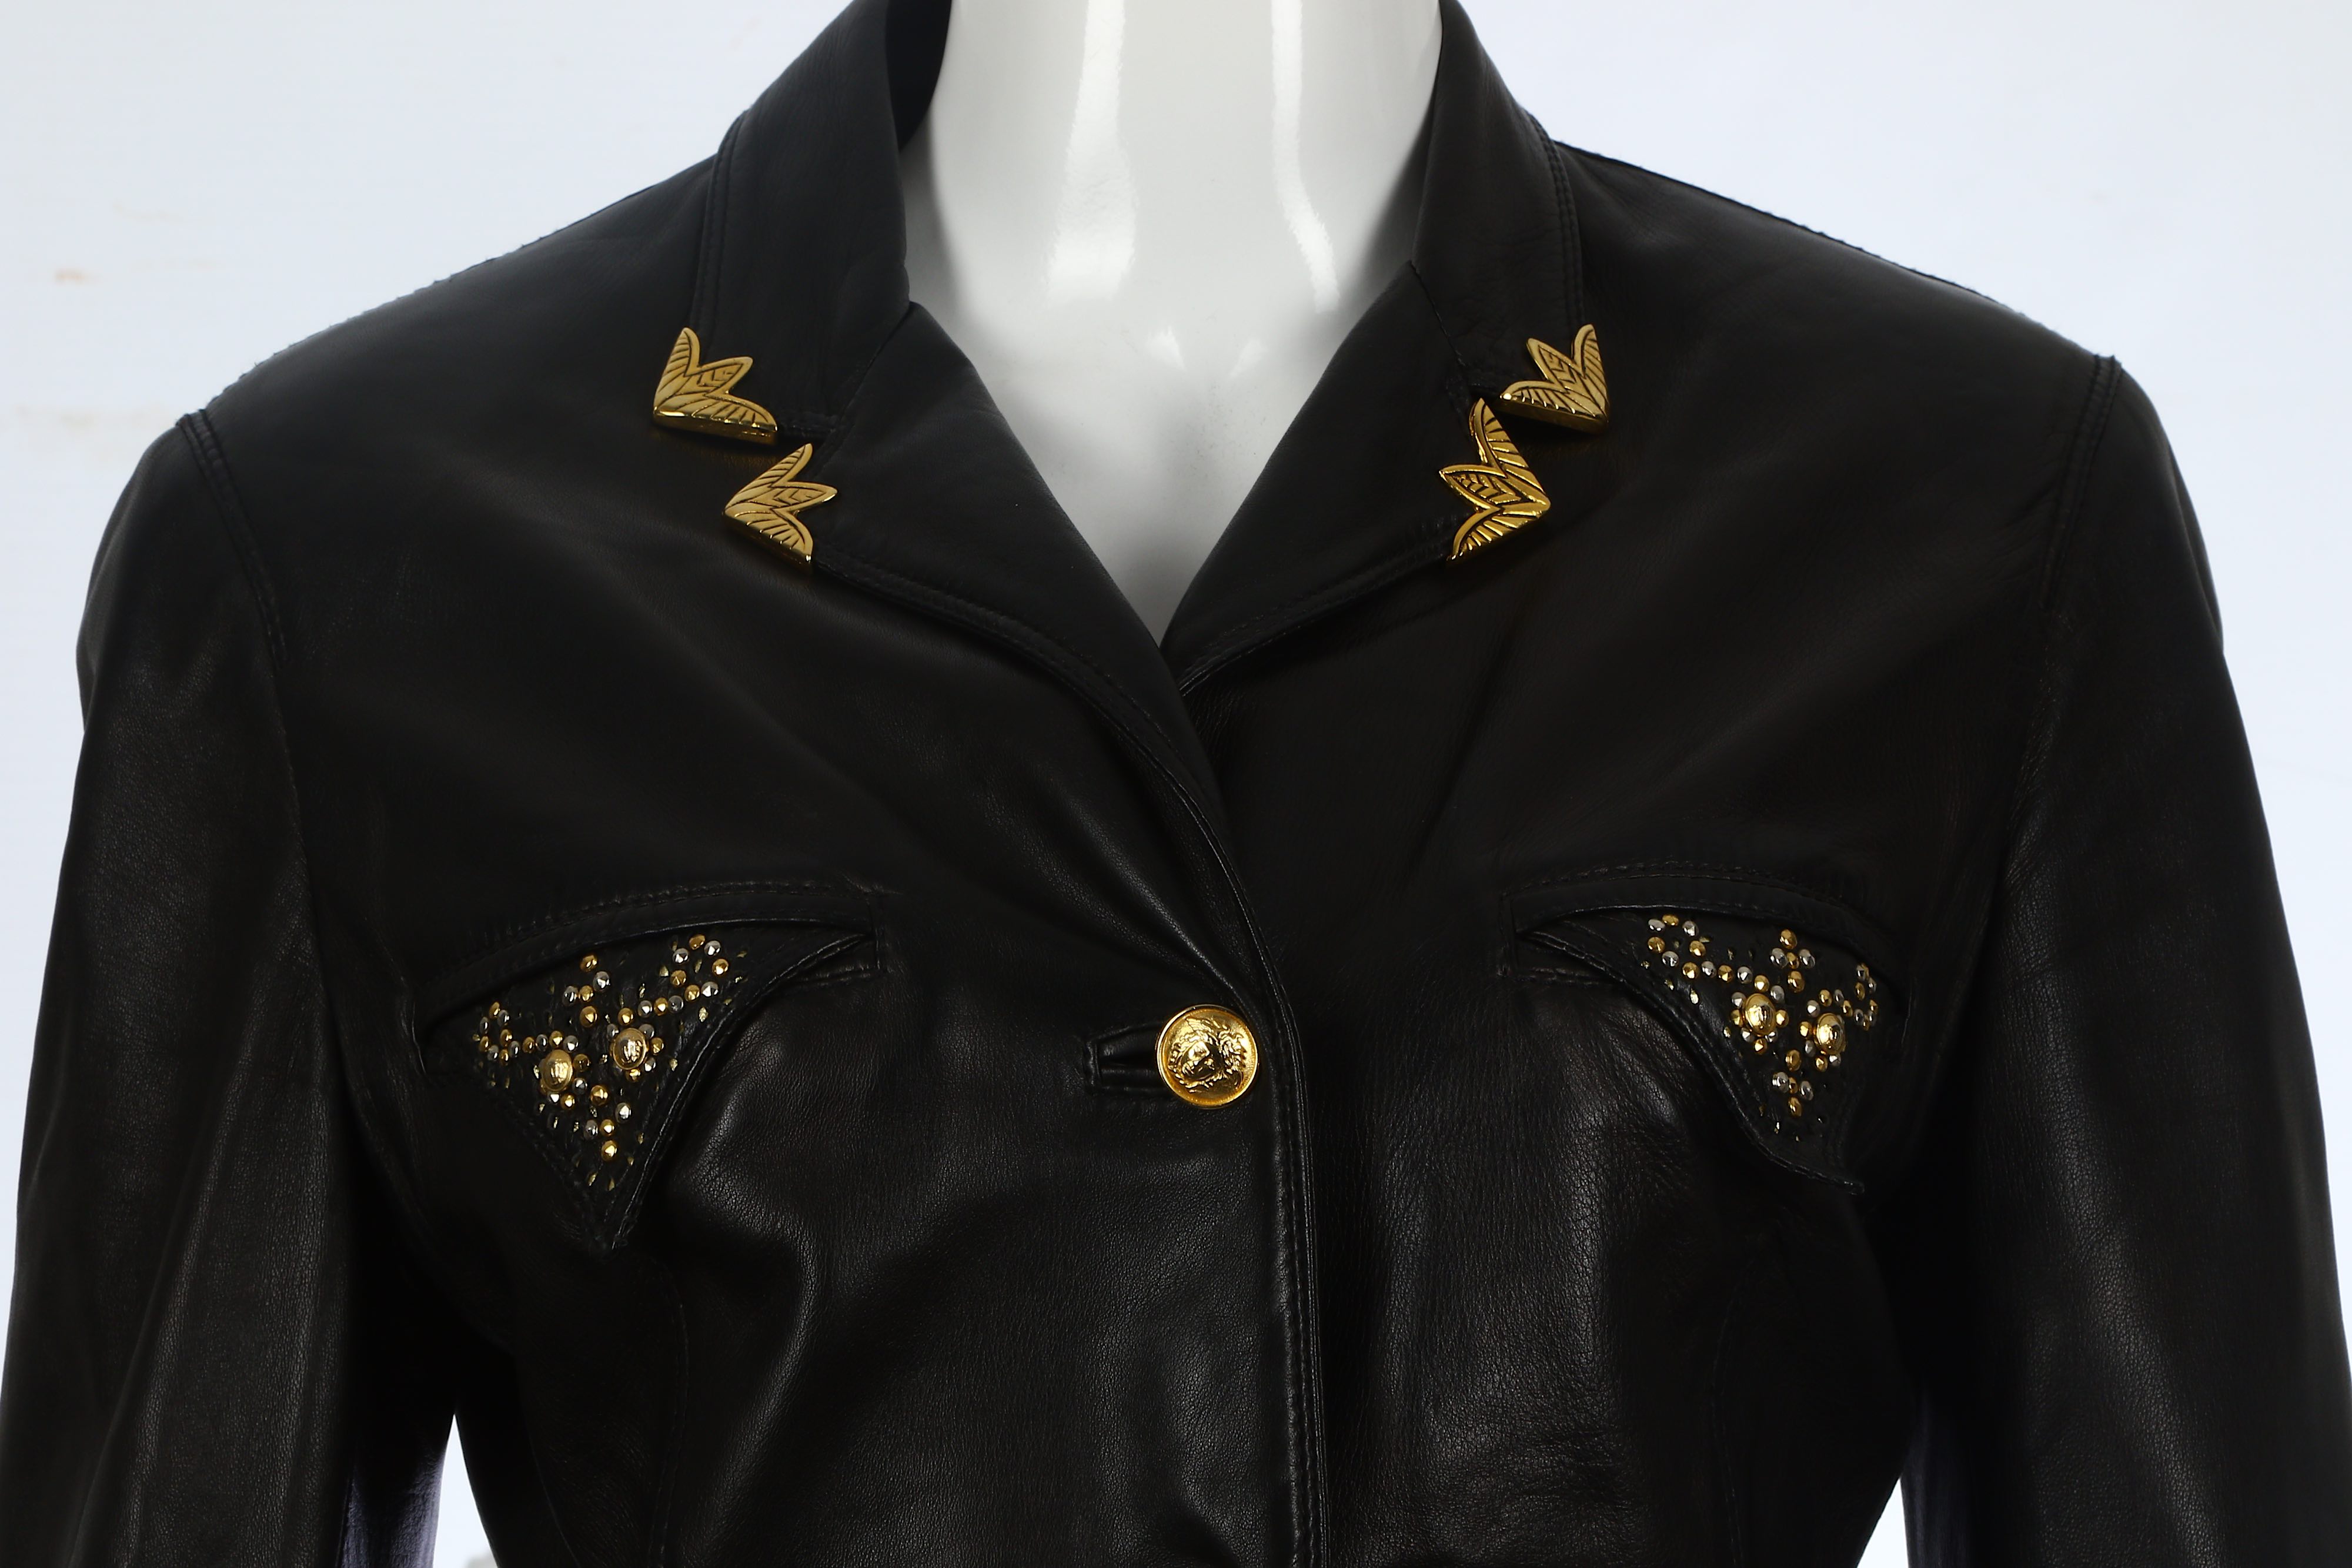 Gianni Versace Black Leather Jacket - Image 4 of 7